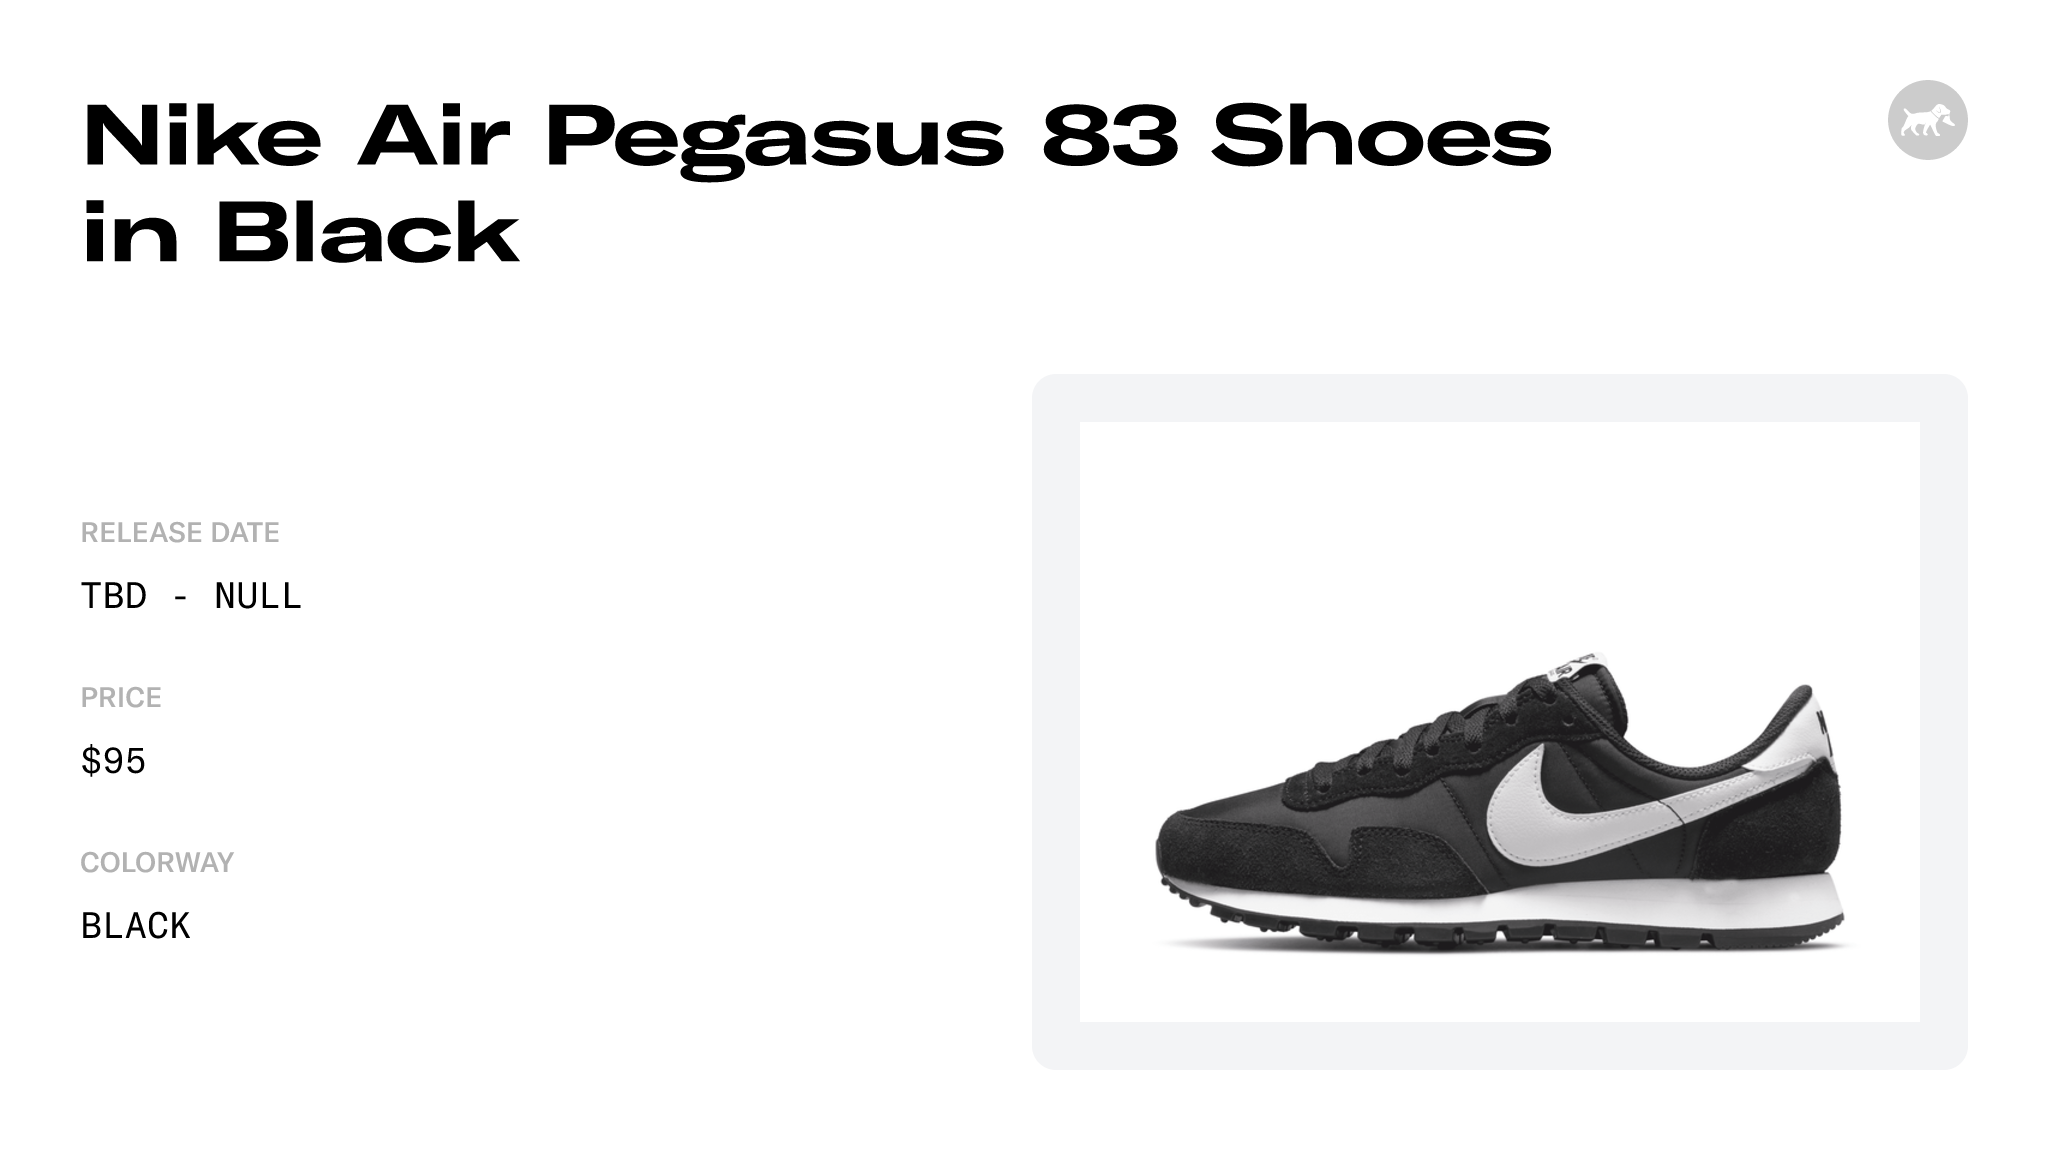 Nike Air Pegasus 83 Shoes in Black - DH8229-001 Raffles and